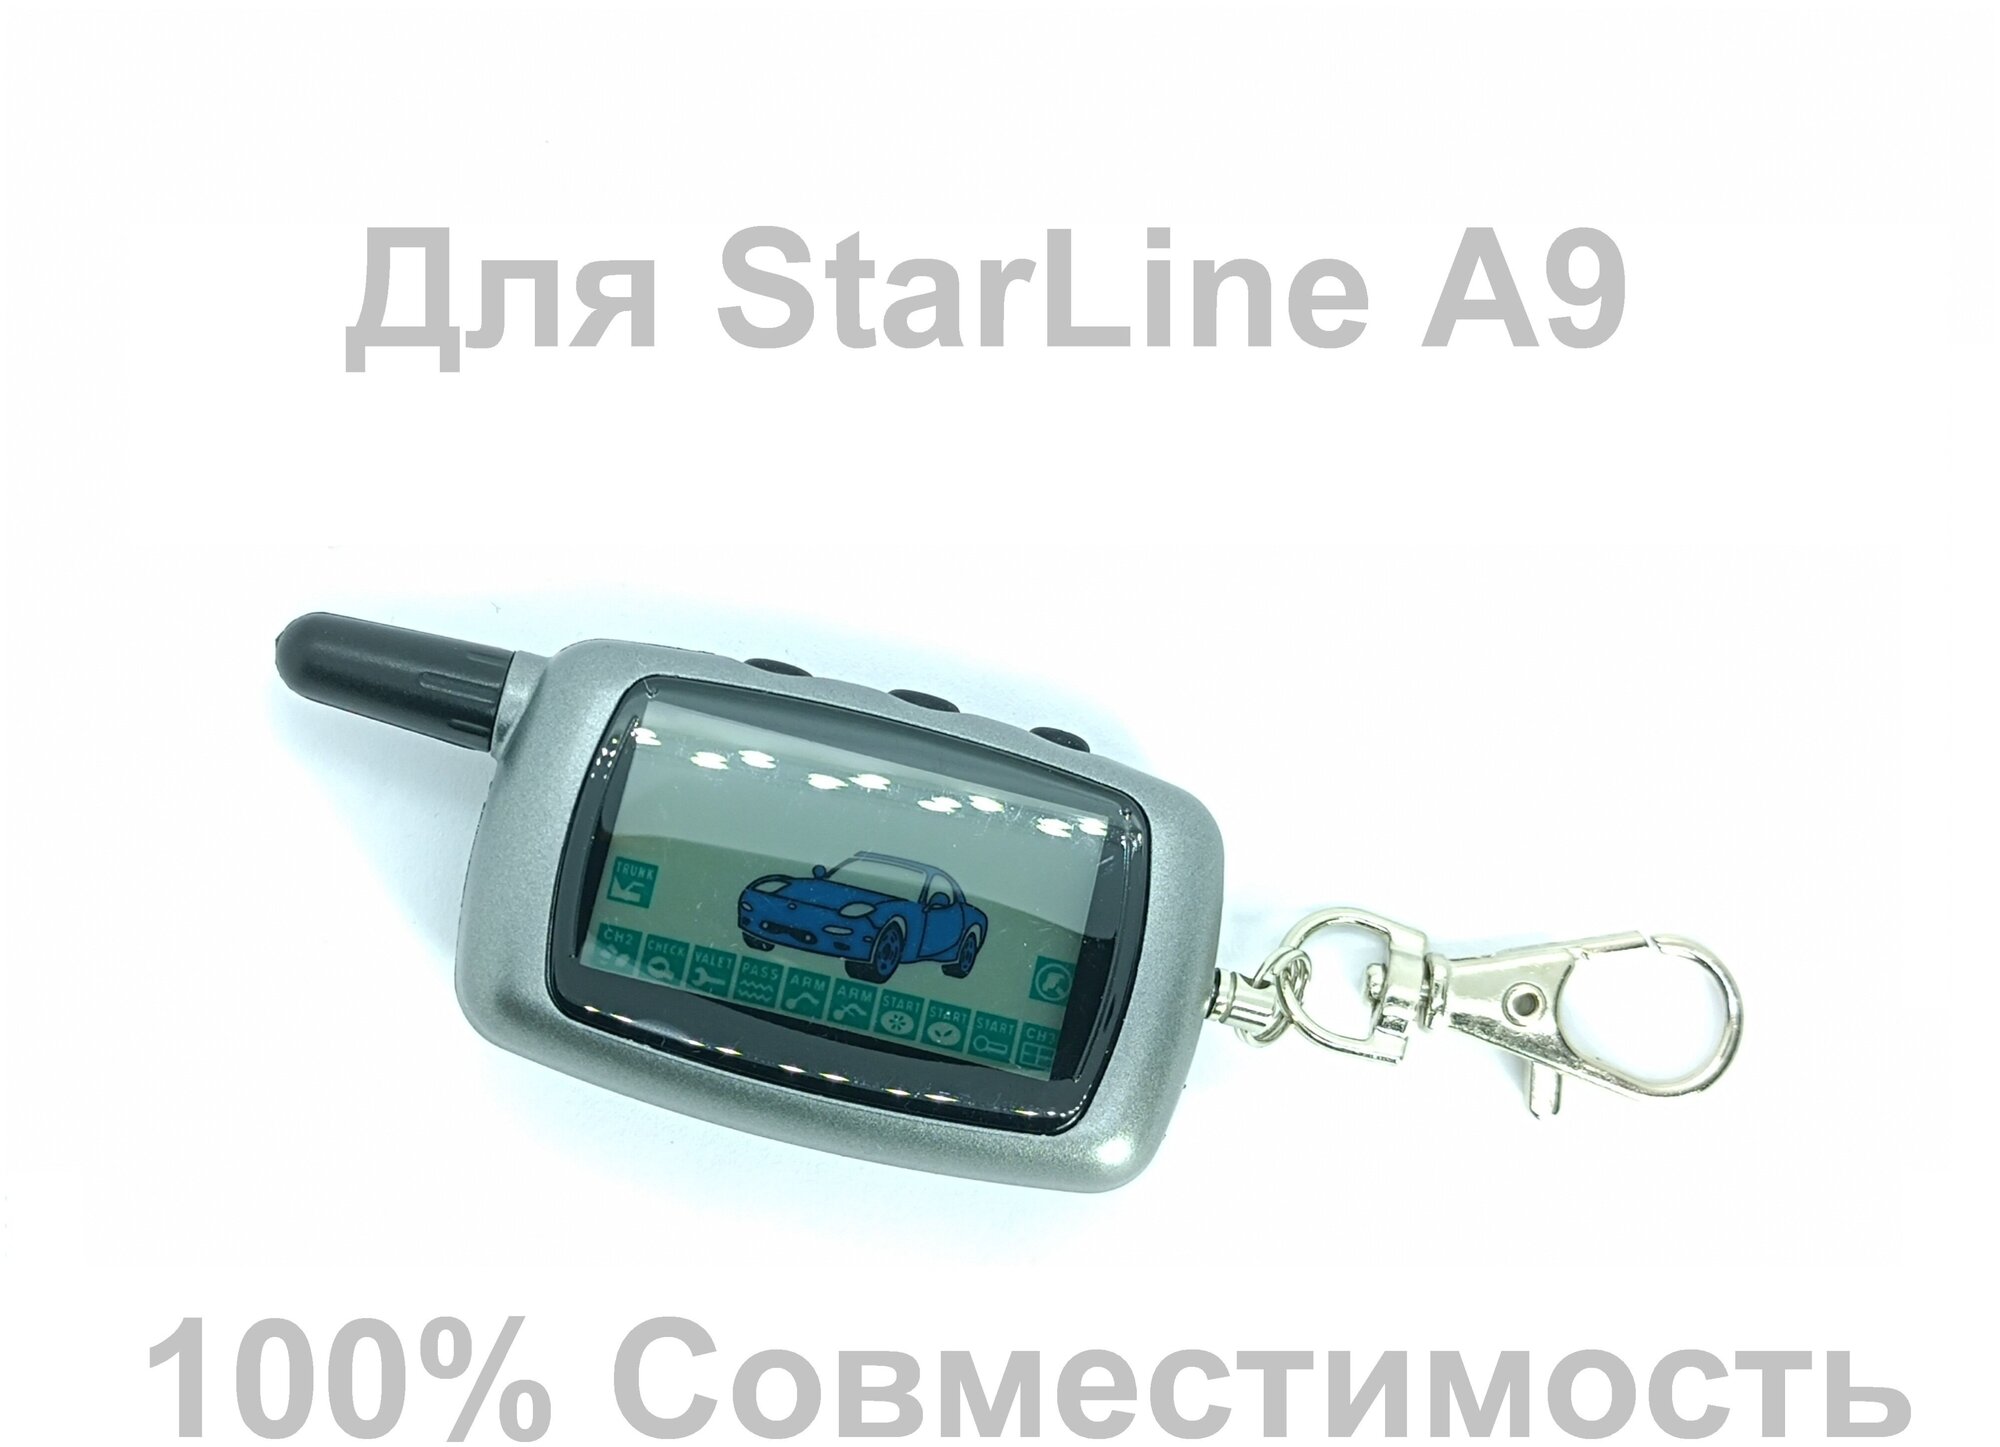 Брелок/пульт/пейджер совместимый для сигнализации S-Line А8/A9